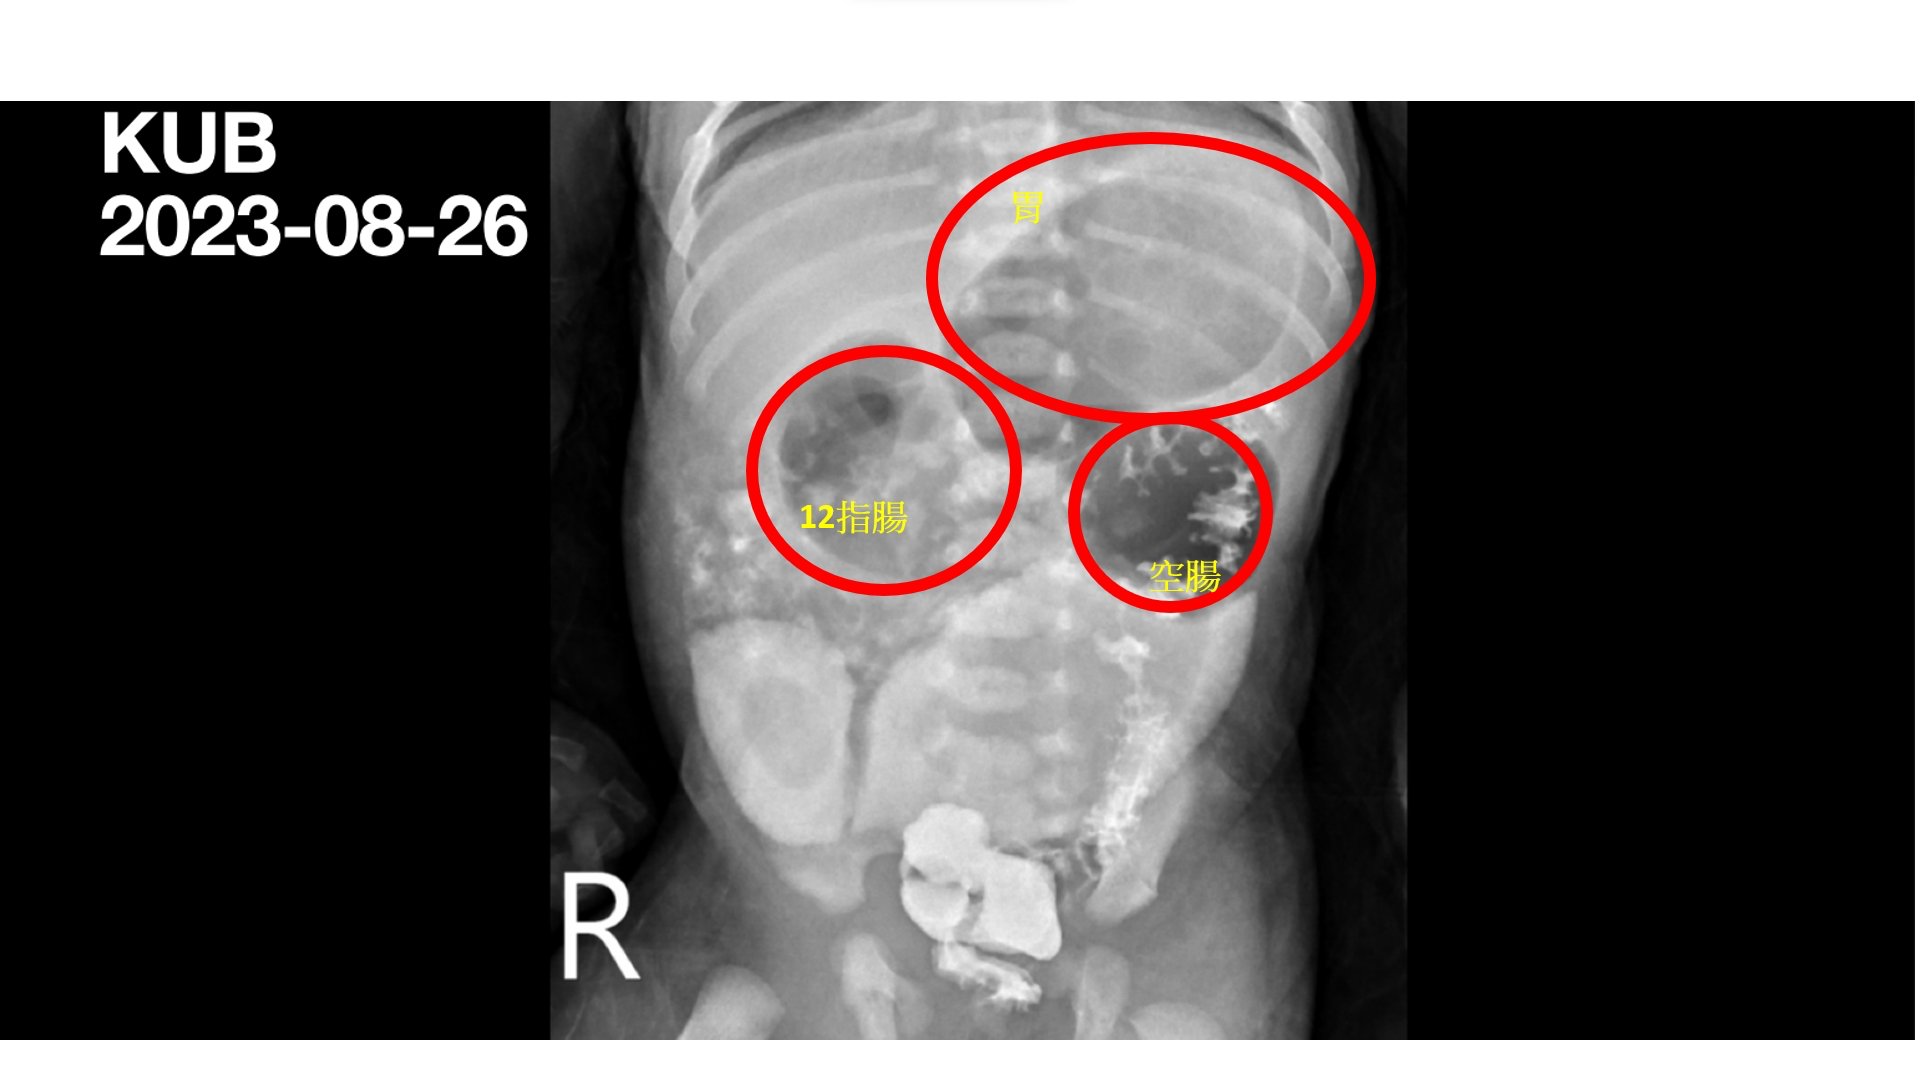 透過腹部X光攝影檢查，可以明顯看出腸道因為閉鎖造成的腸胃道腫大。